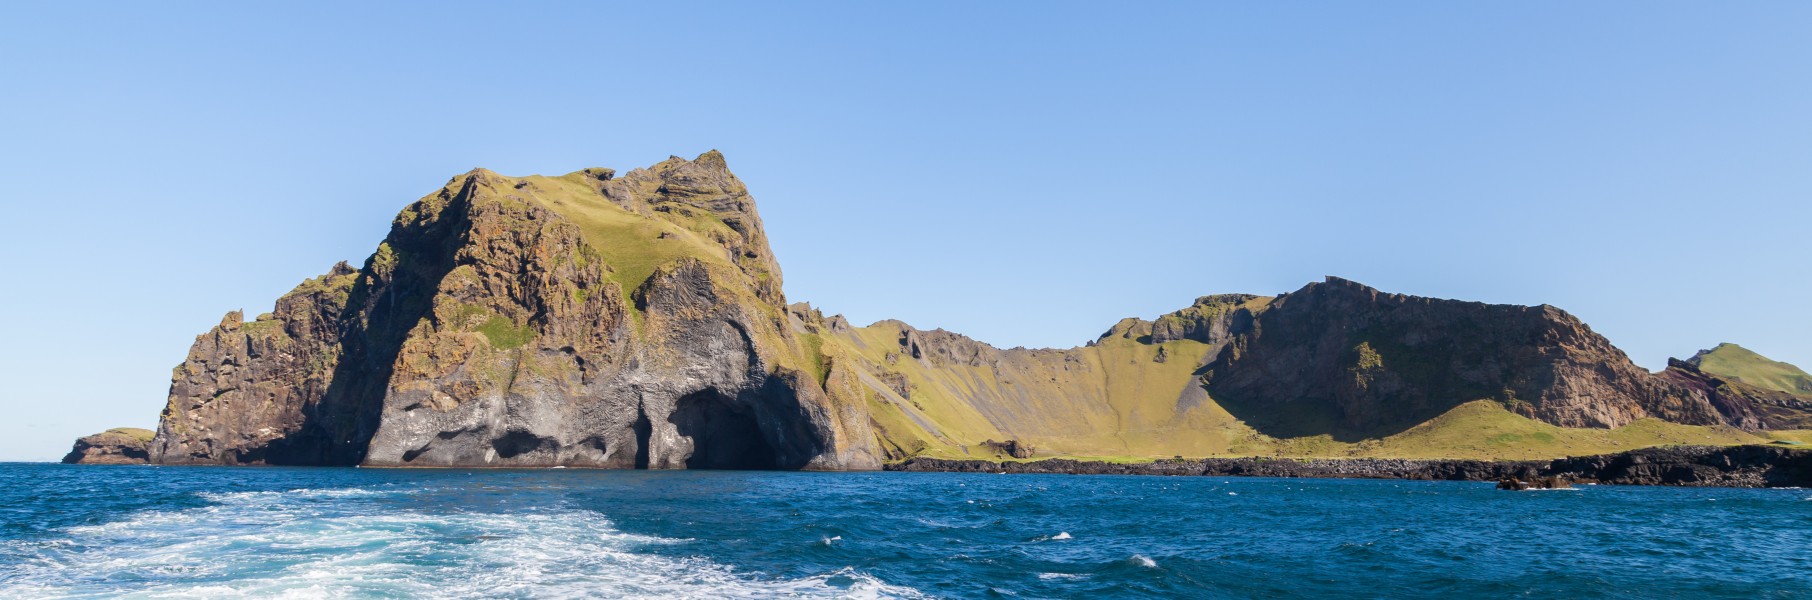 Roca del elefante, Heimaey, Islas Vestman, Suðurland, Islandia, 2014-08-17, DD 045